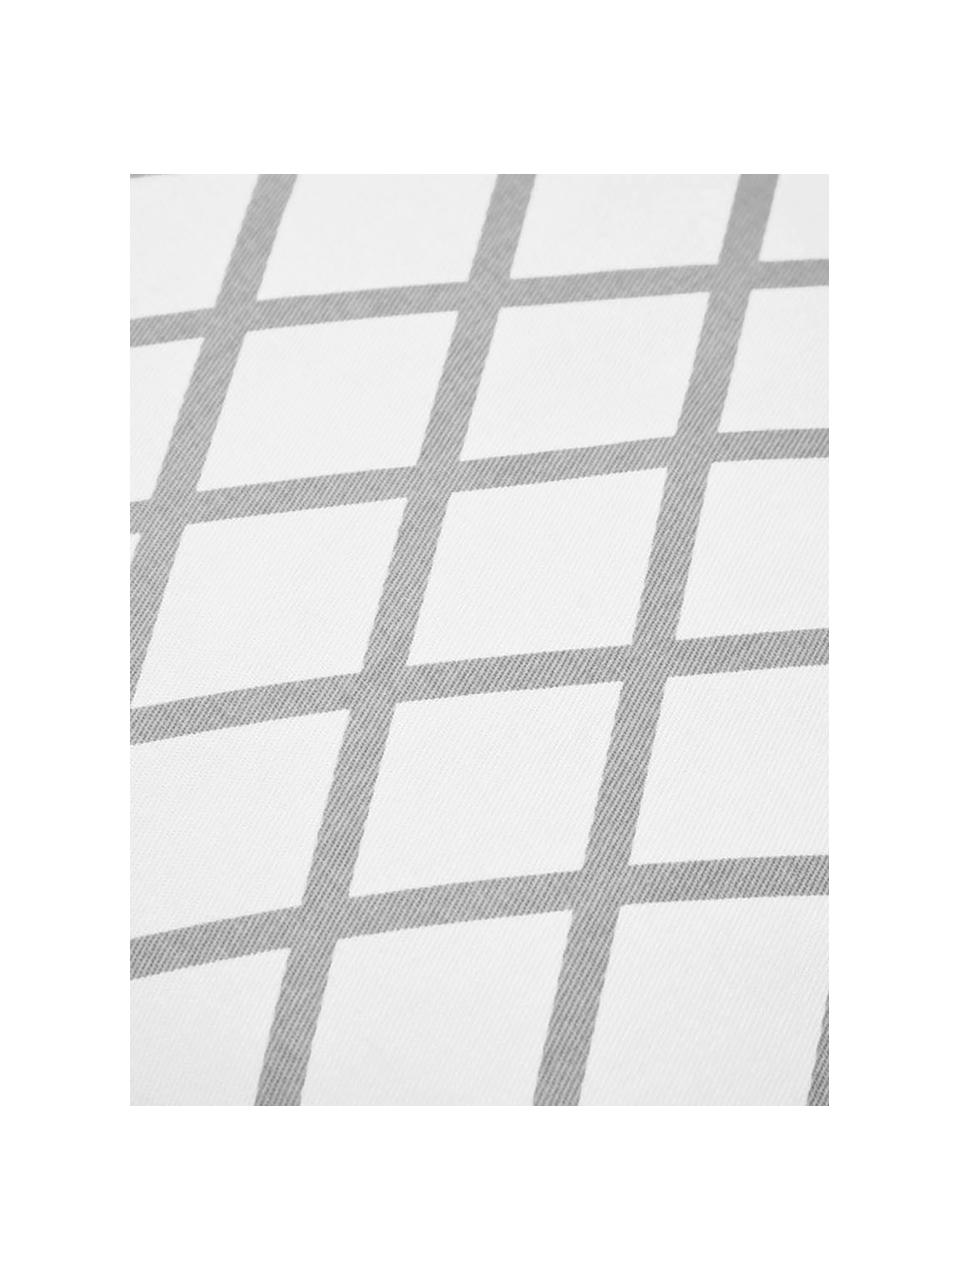 Kussenhoes Romy met ruitjesmotief in grijs/wit, 100% katoen, panamabinding, Grijs, crèmekleurig, 40 x 40 cm